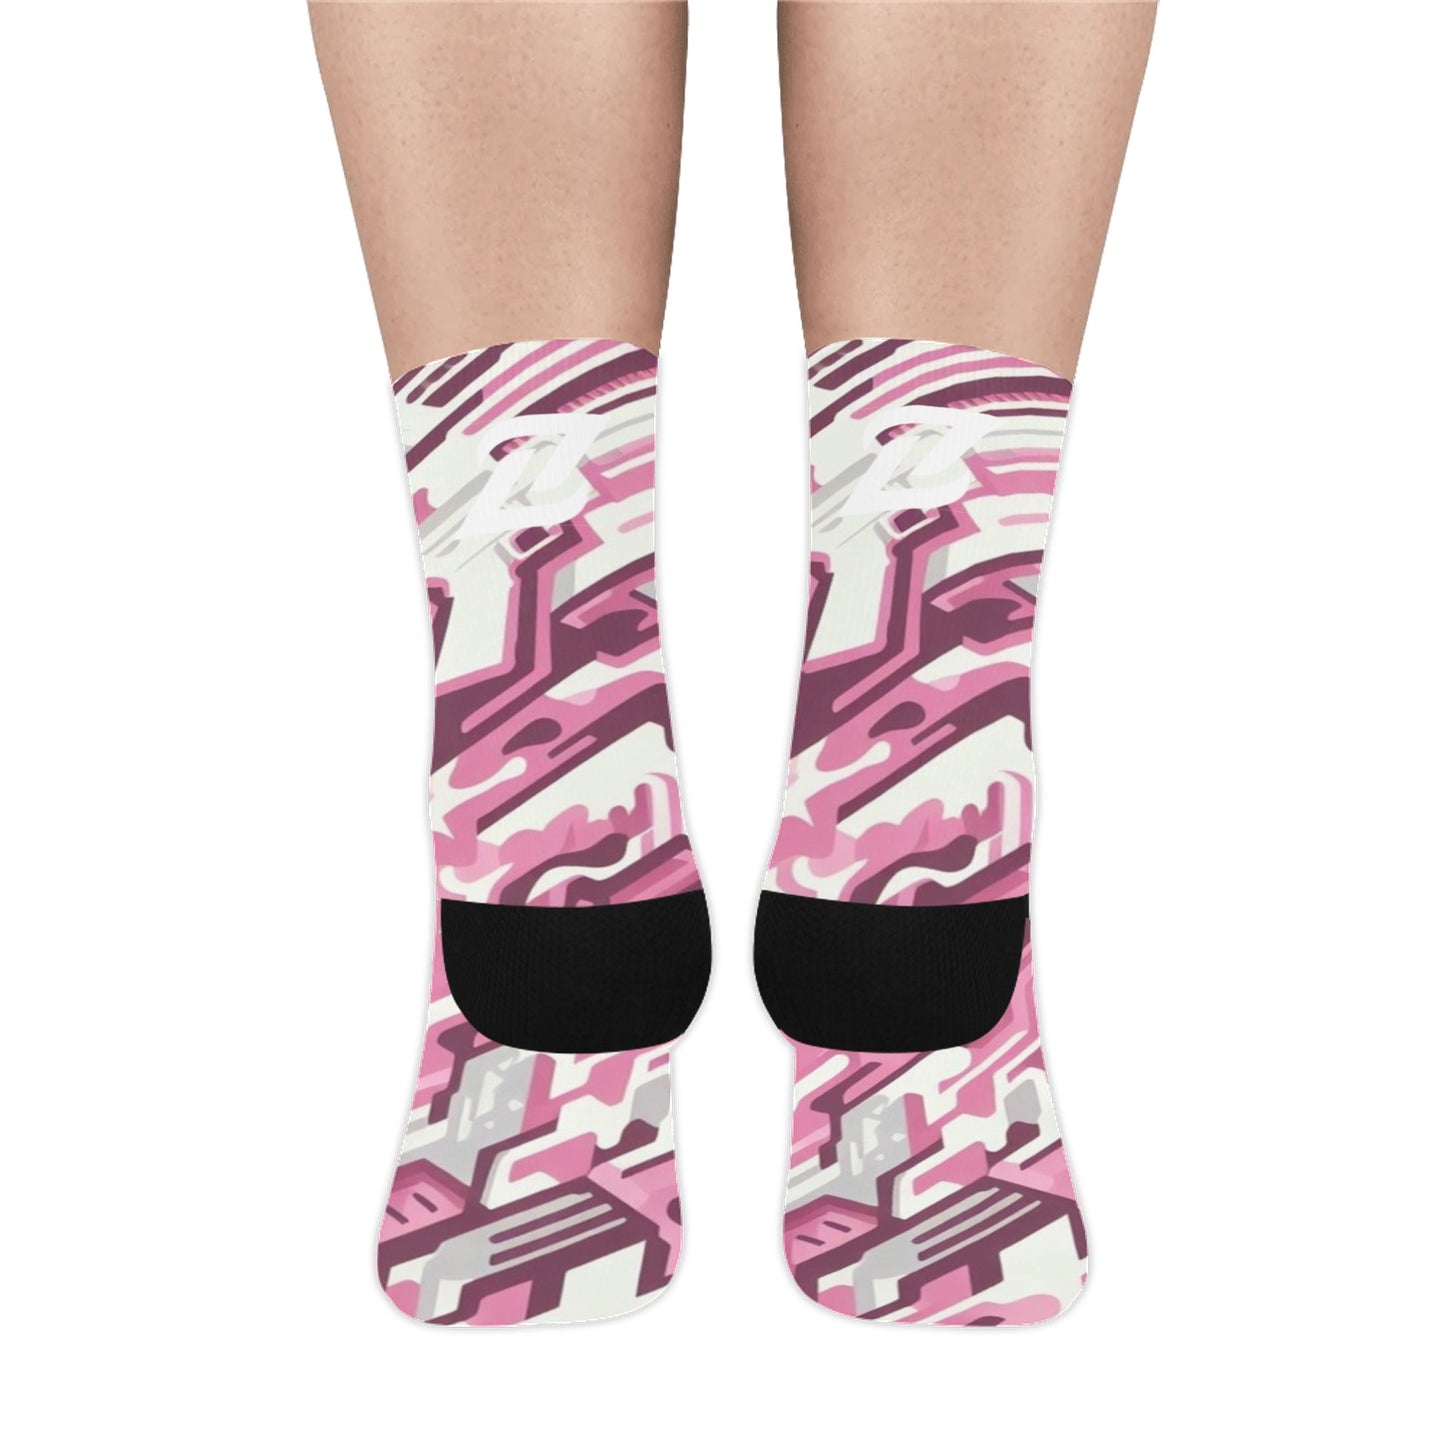 Zen Socks - Pink Camo